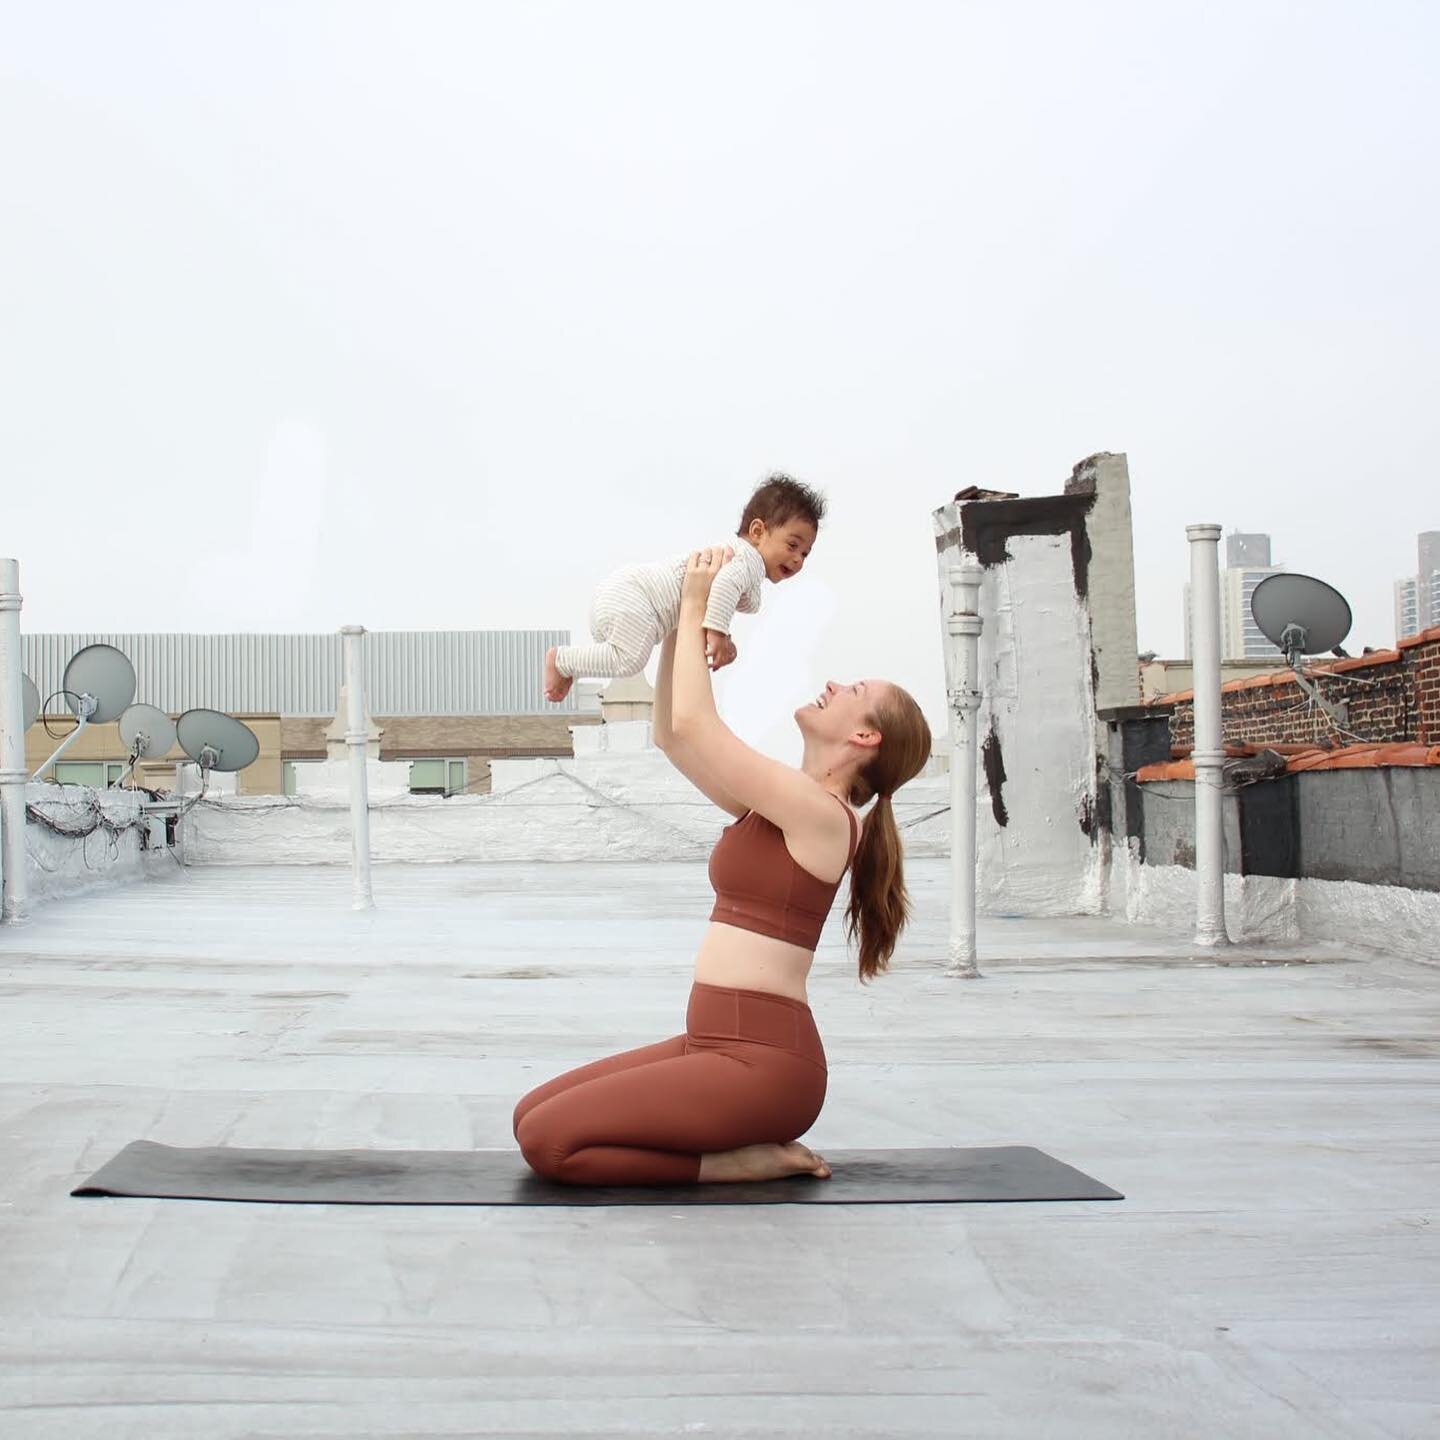 Conoce a Sarah Almodóvar

Sarah enseña yoga pre / postnatal y es un apasionado de la potenciación de las madres en el viaje a través del embarazo y el posparto. Su misión es ayudarte a sentirte bien embarazada, tener una experiencia de parto positiva y amar tu cuerpo después del parto.